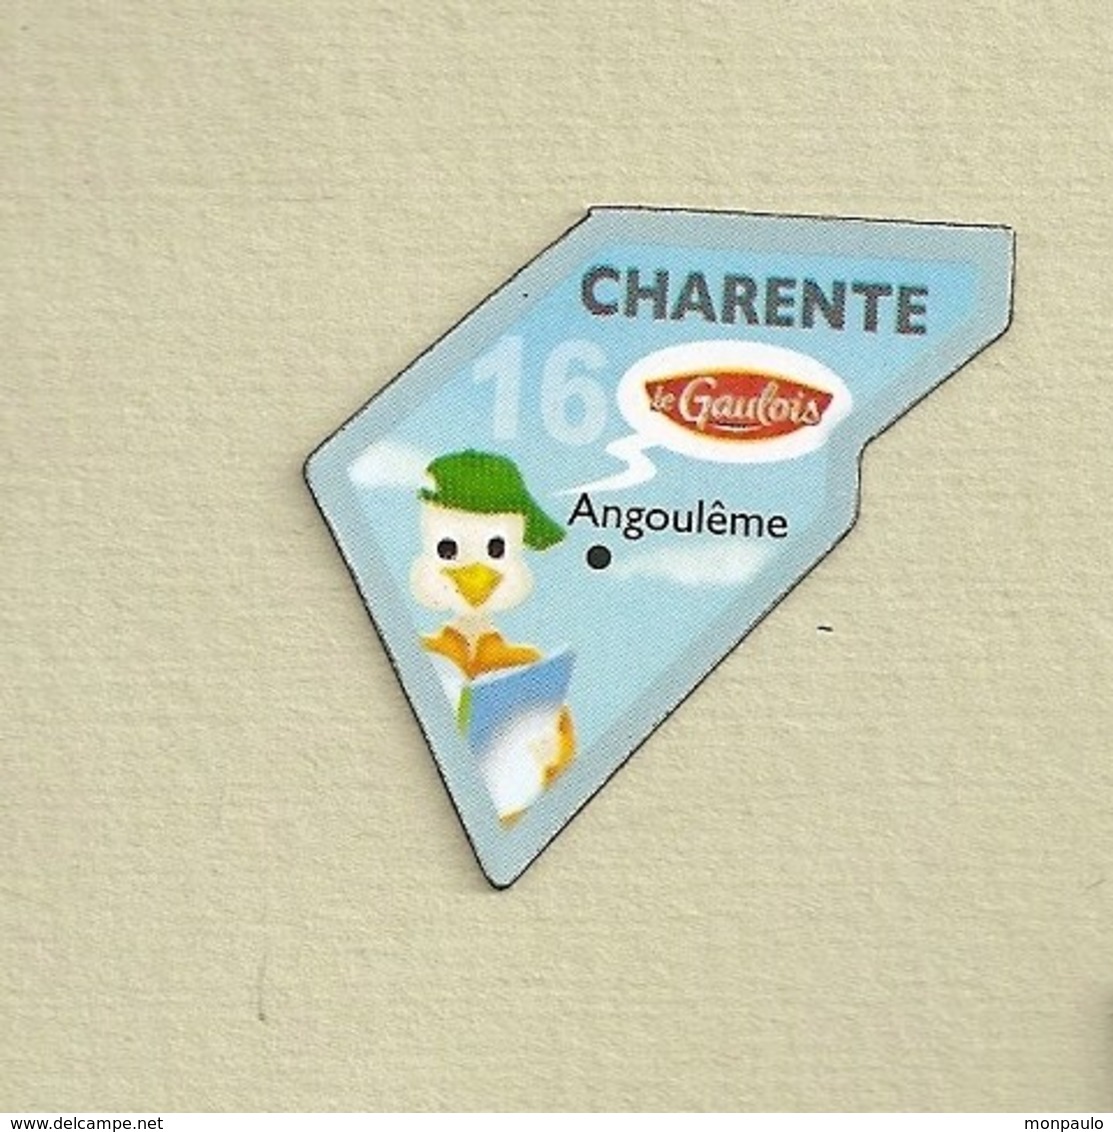 Magnets. Magnets "Le Gaulois" Départements Français. La Charente (16) - Publicitaires